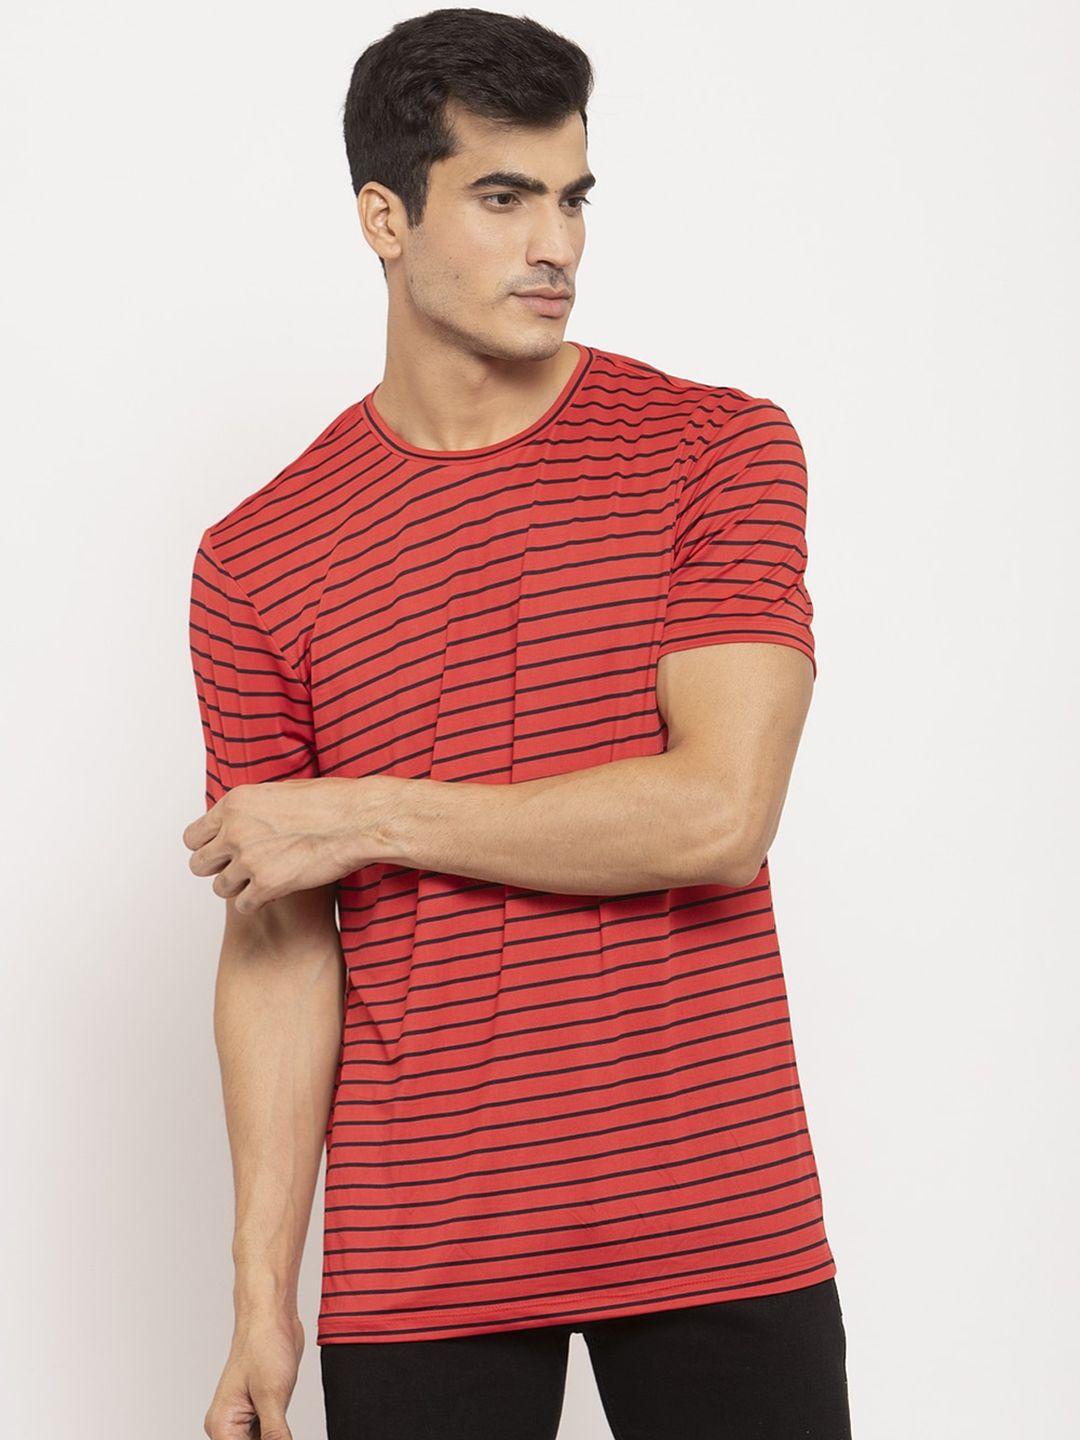 door74 men red & black striped t-shirt